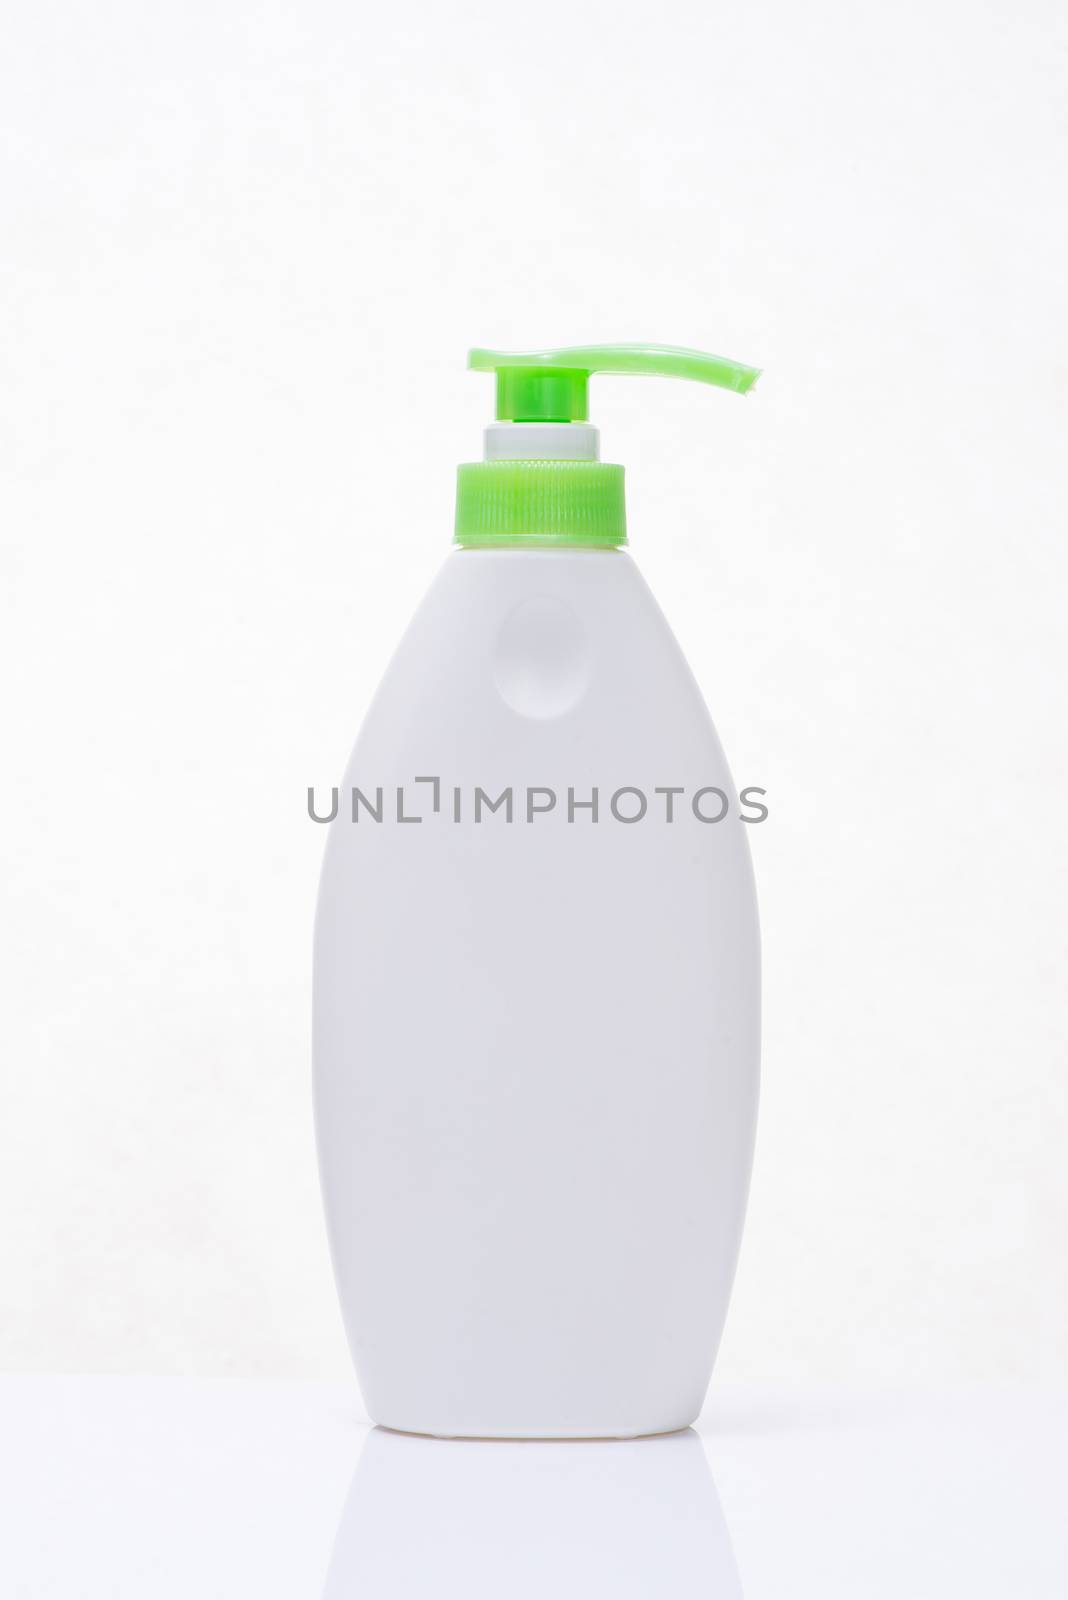 Cosmetics, Moisturizer, Serum Bottle isolated on white. 